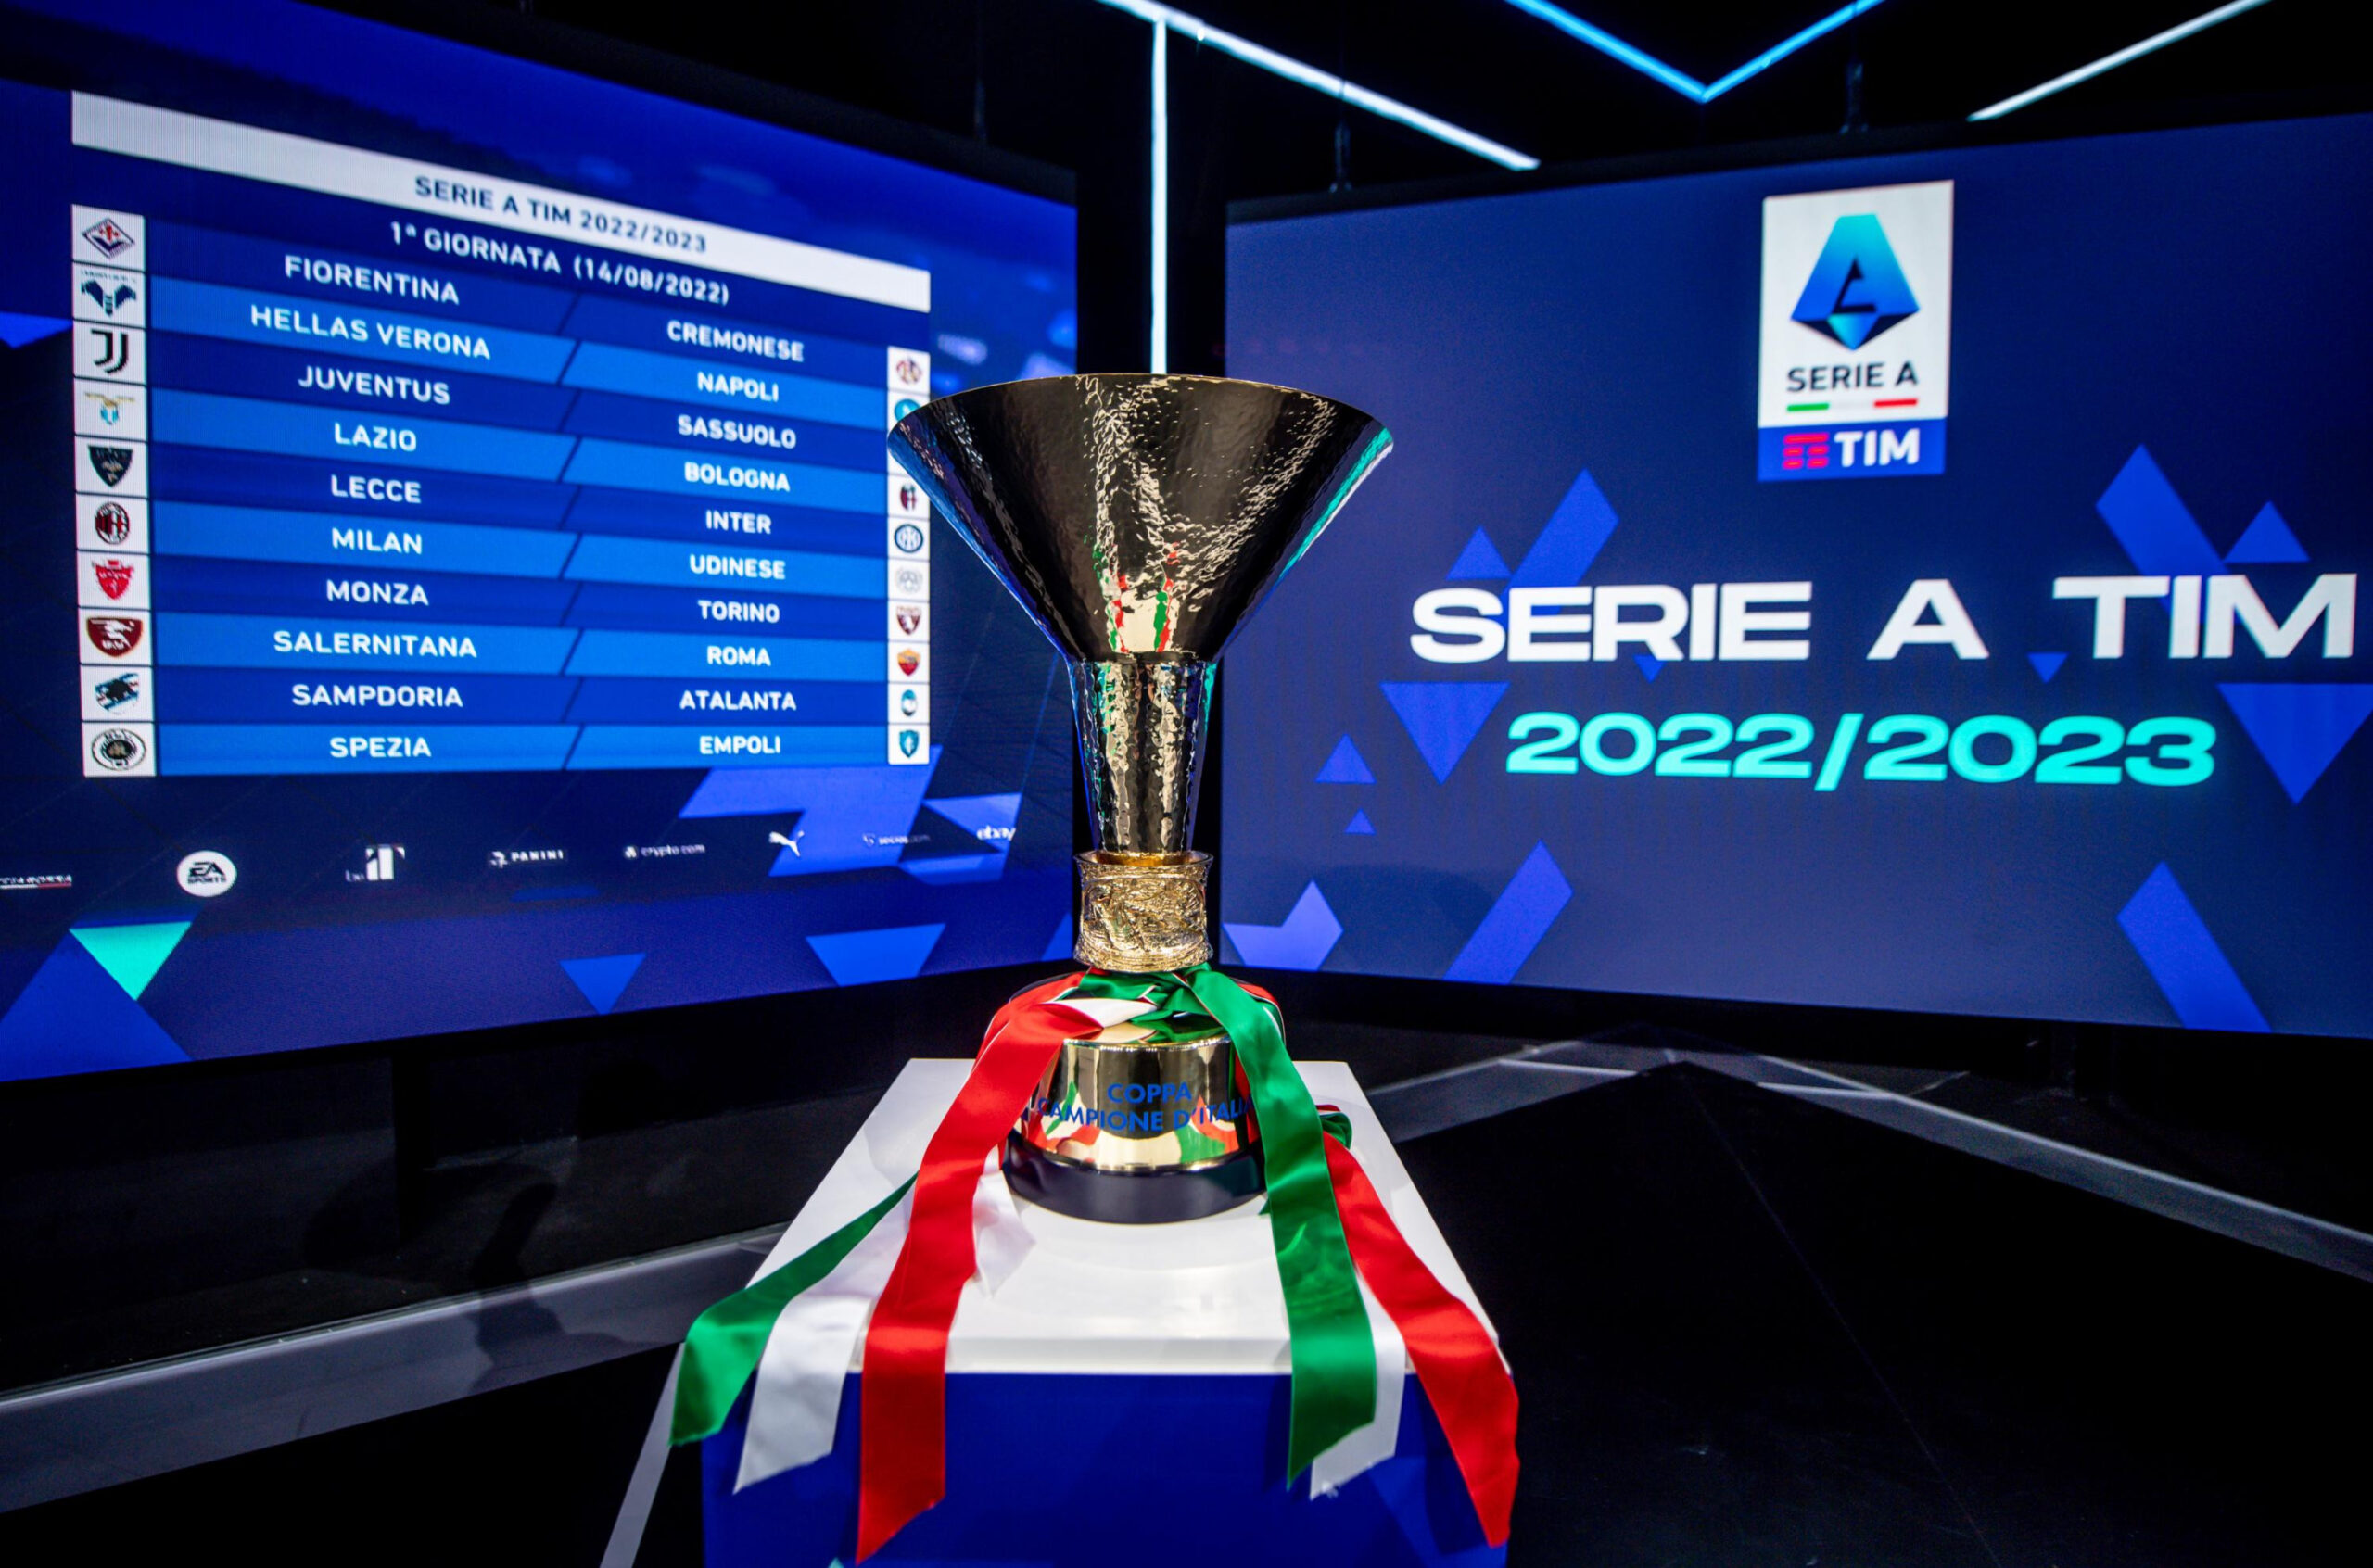 Cúp vô địch Seria A